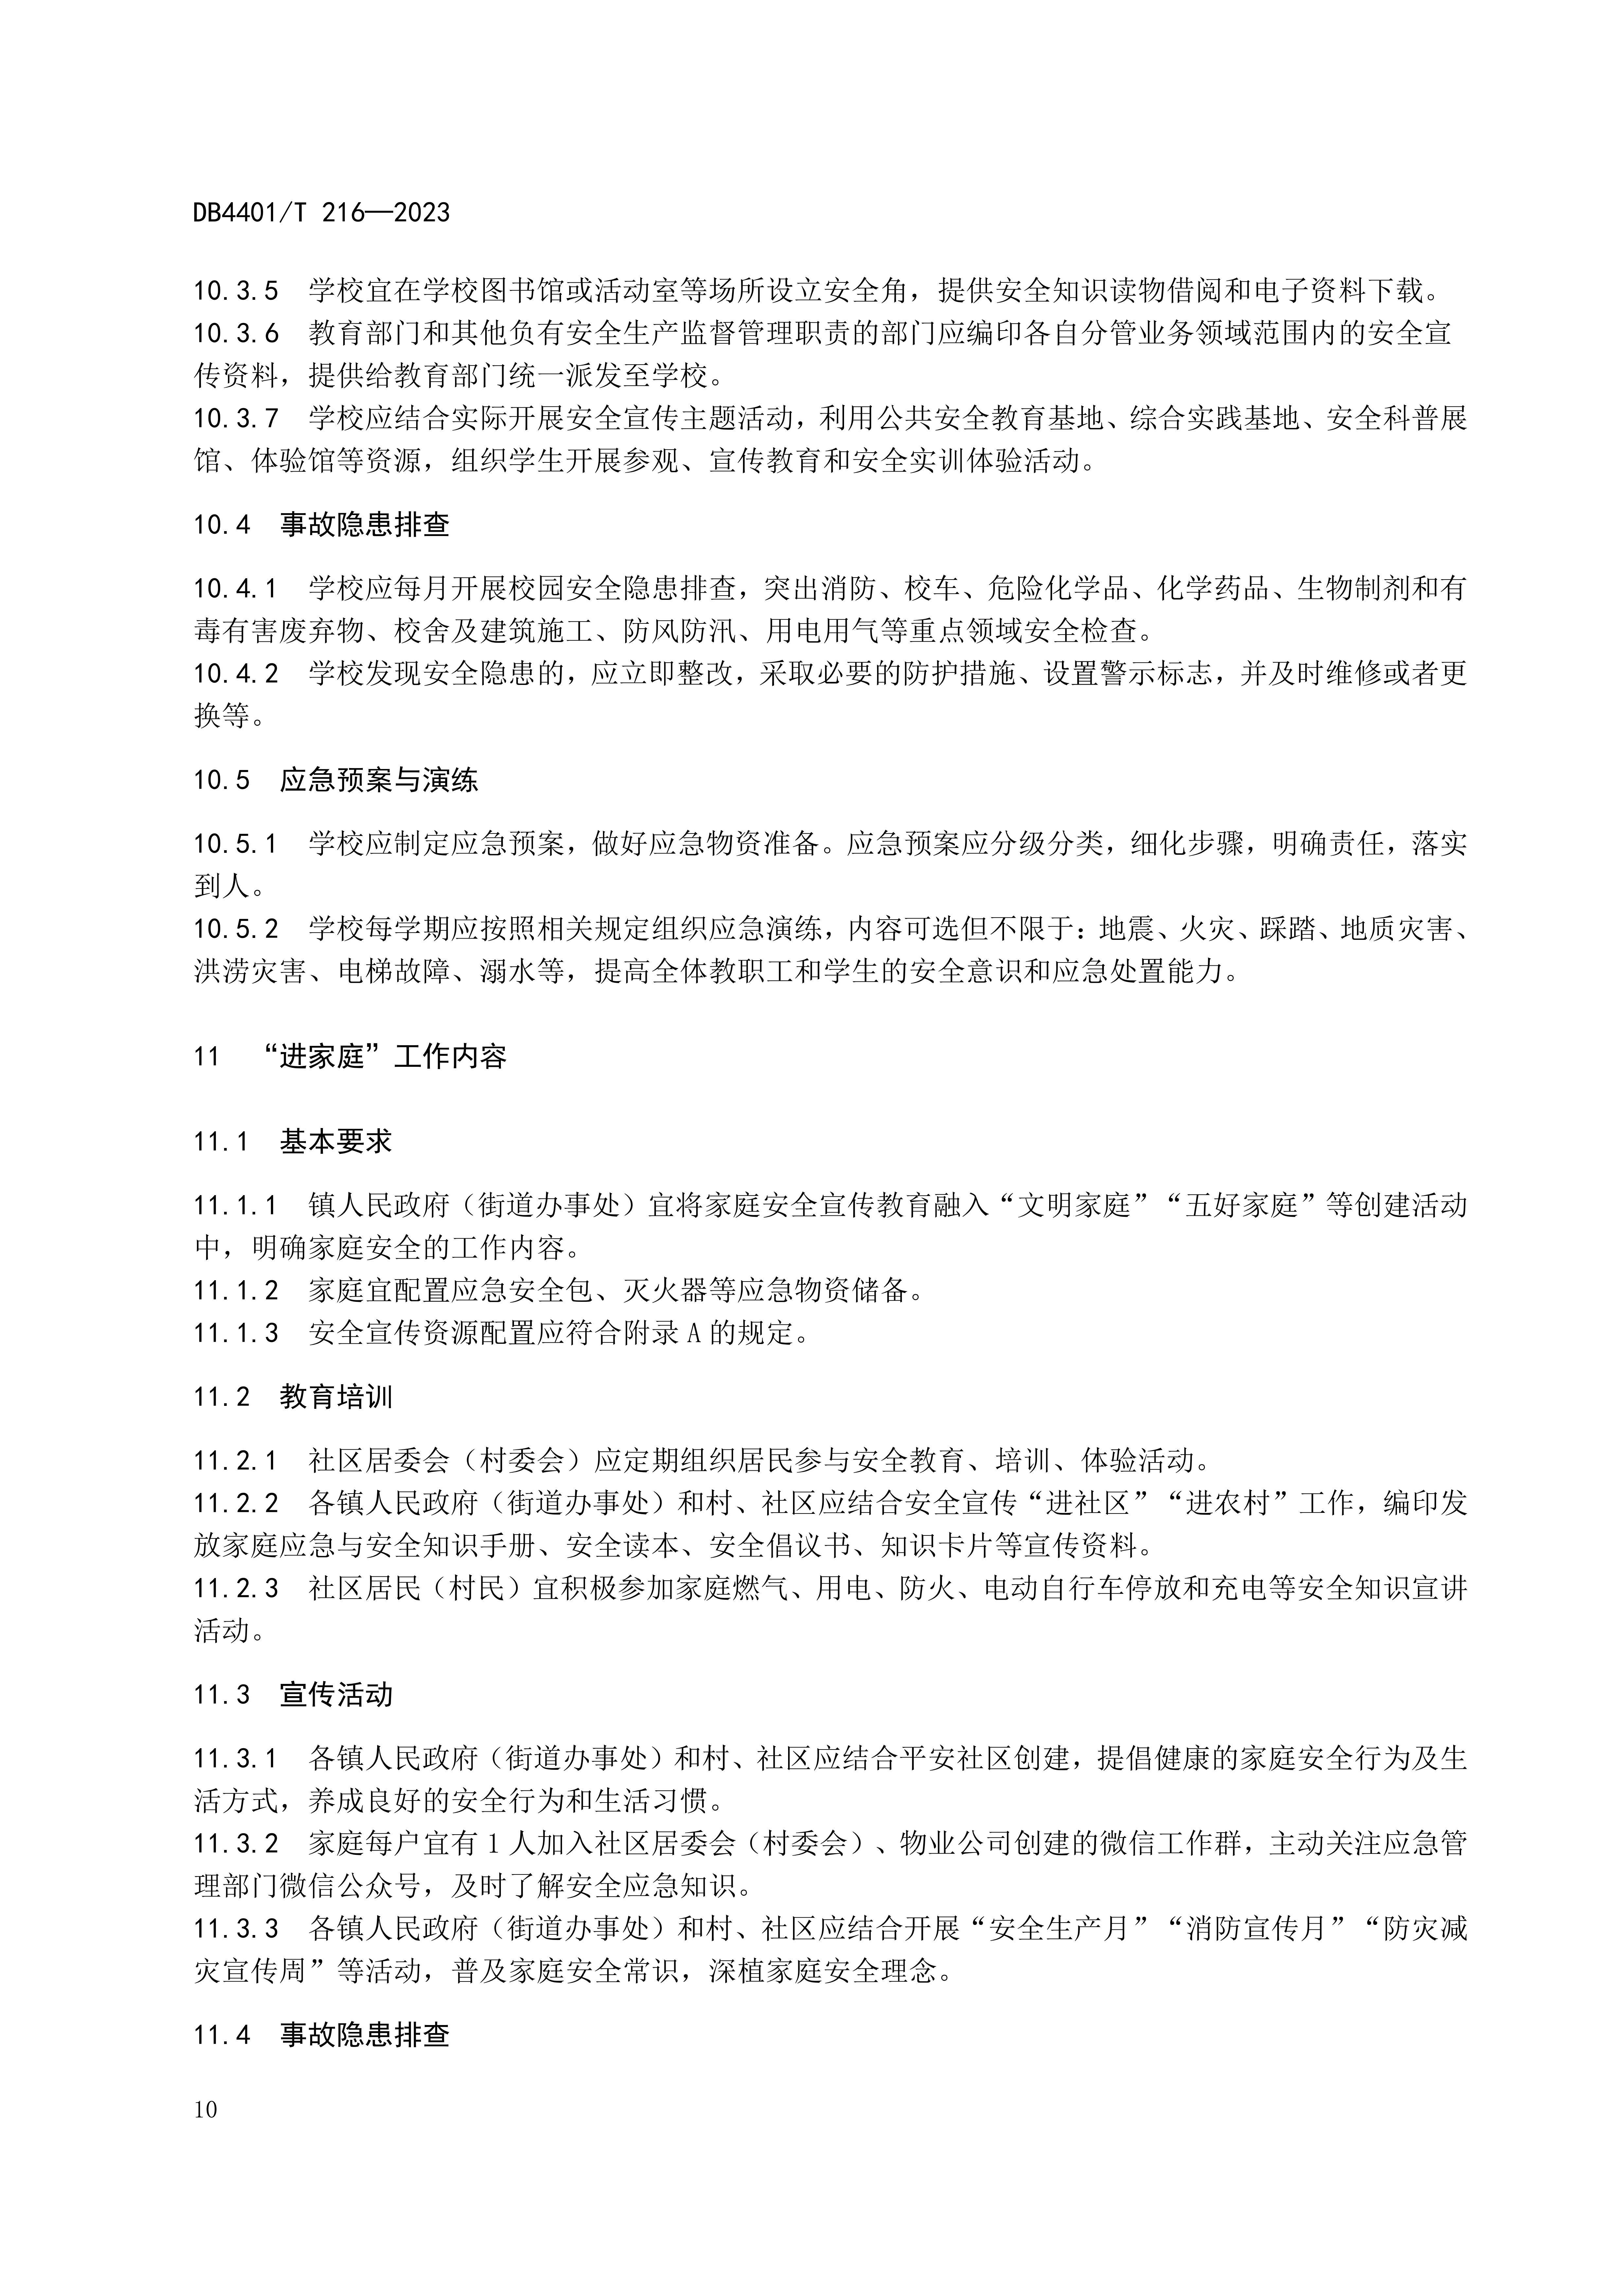 (终稿 发布稿)广州市地方标准《安全宣传“五进”工作规范》20230625_15.jpg